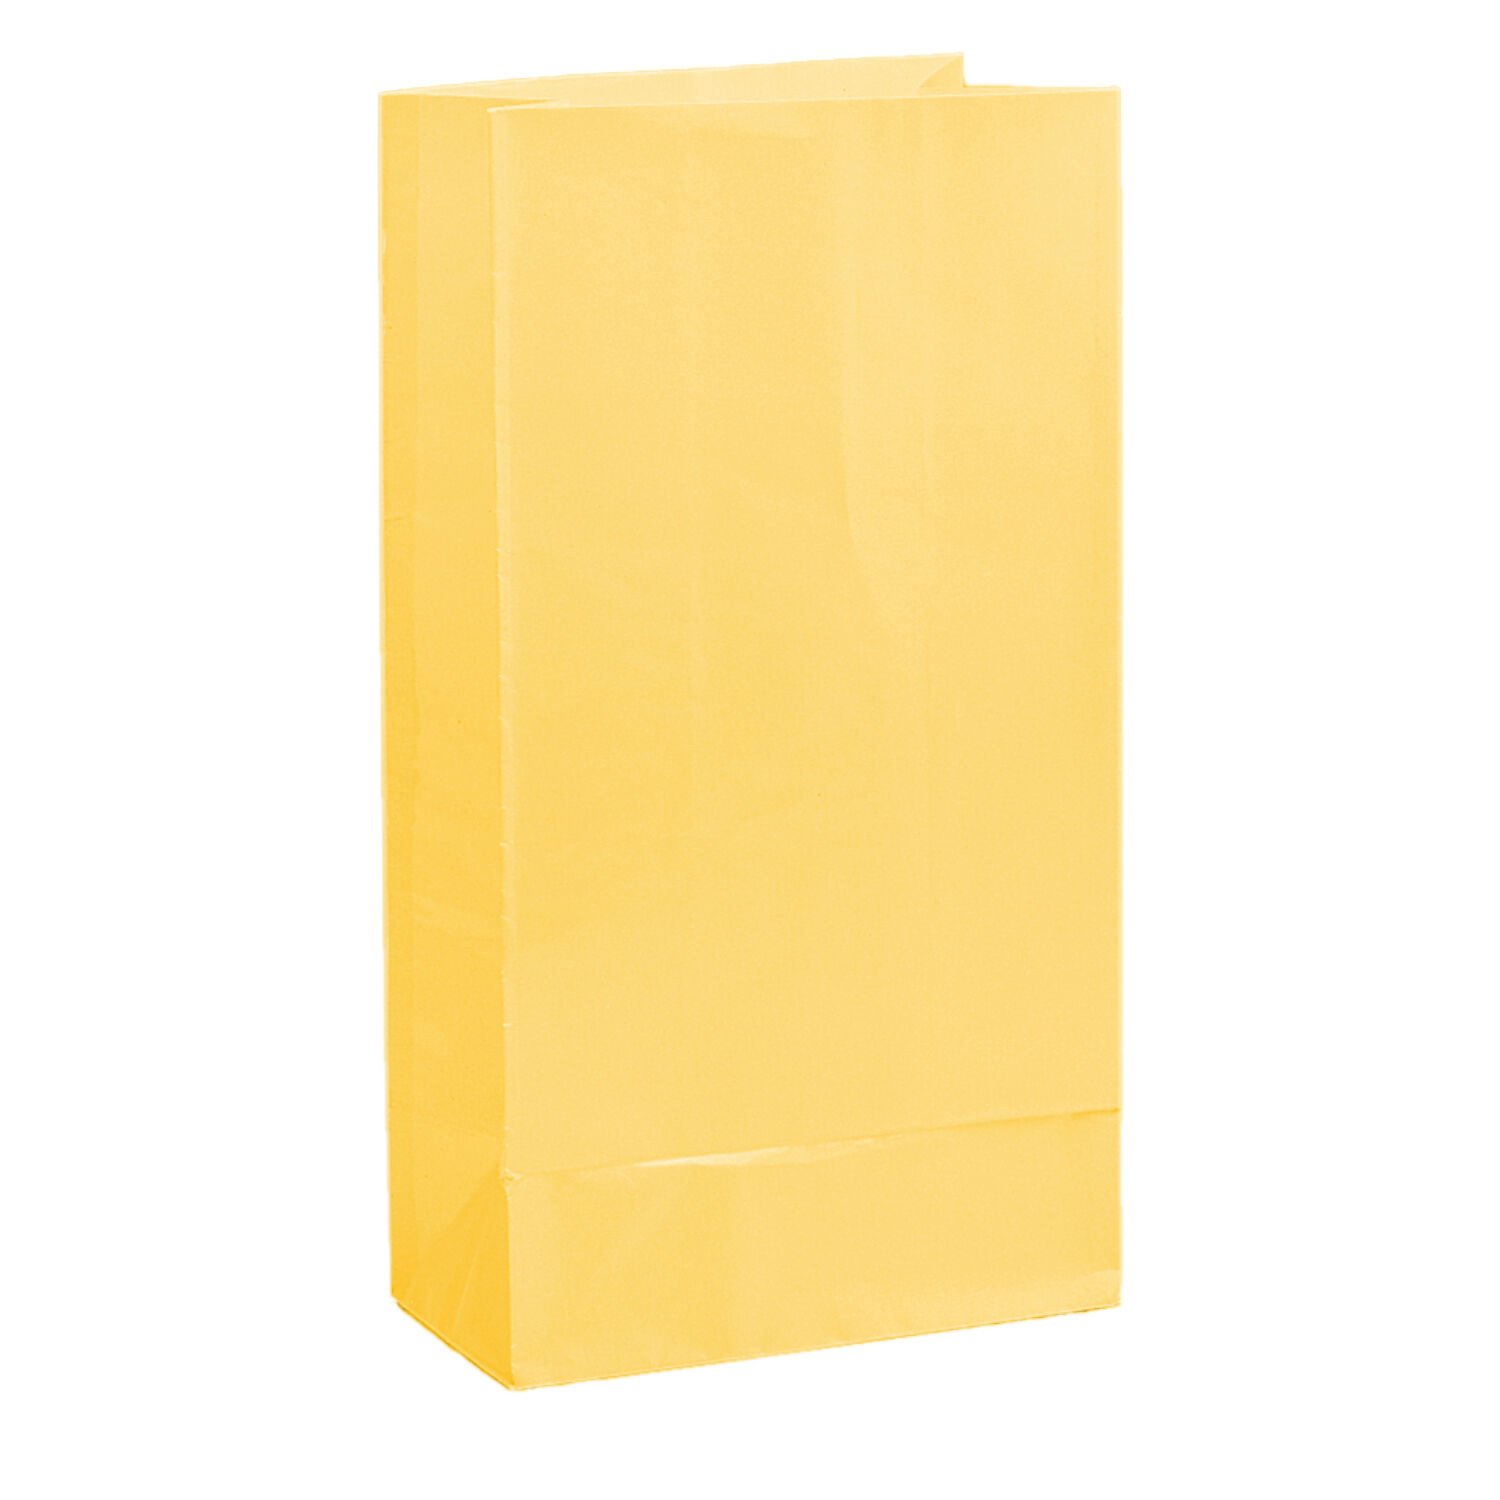 NEU Geschenktüten aus Papier, gelb, 25x12cm, 12 Stück